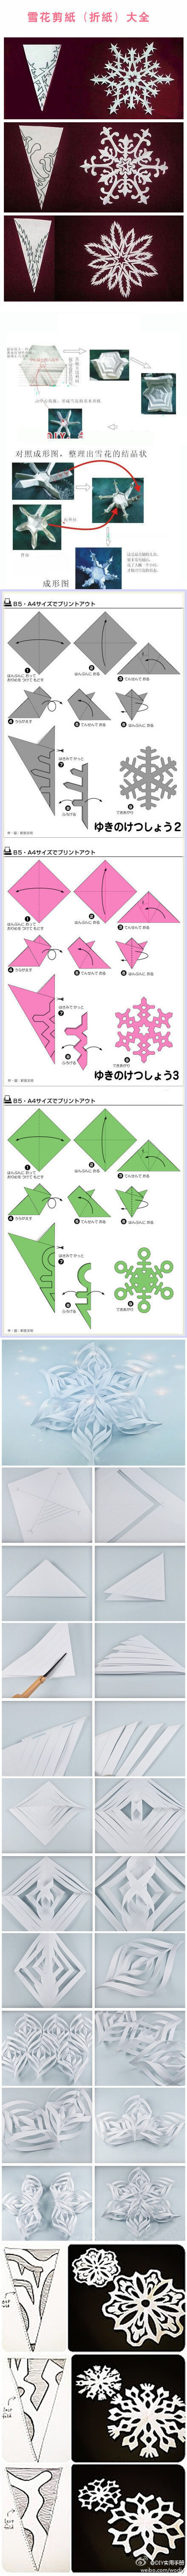 雪花剪纸折纸